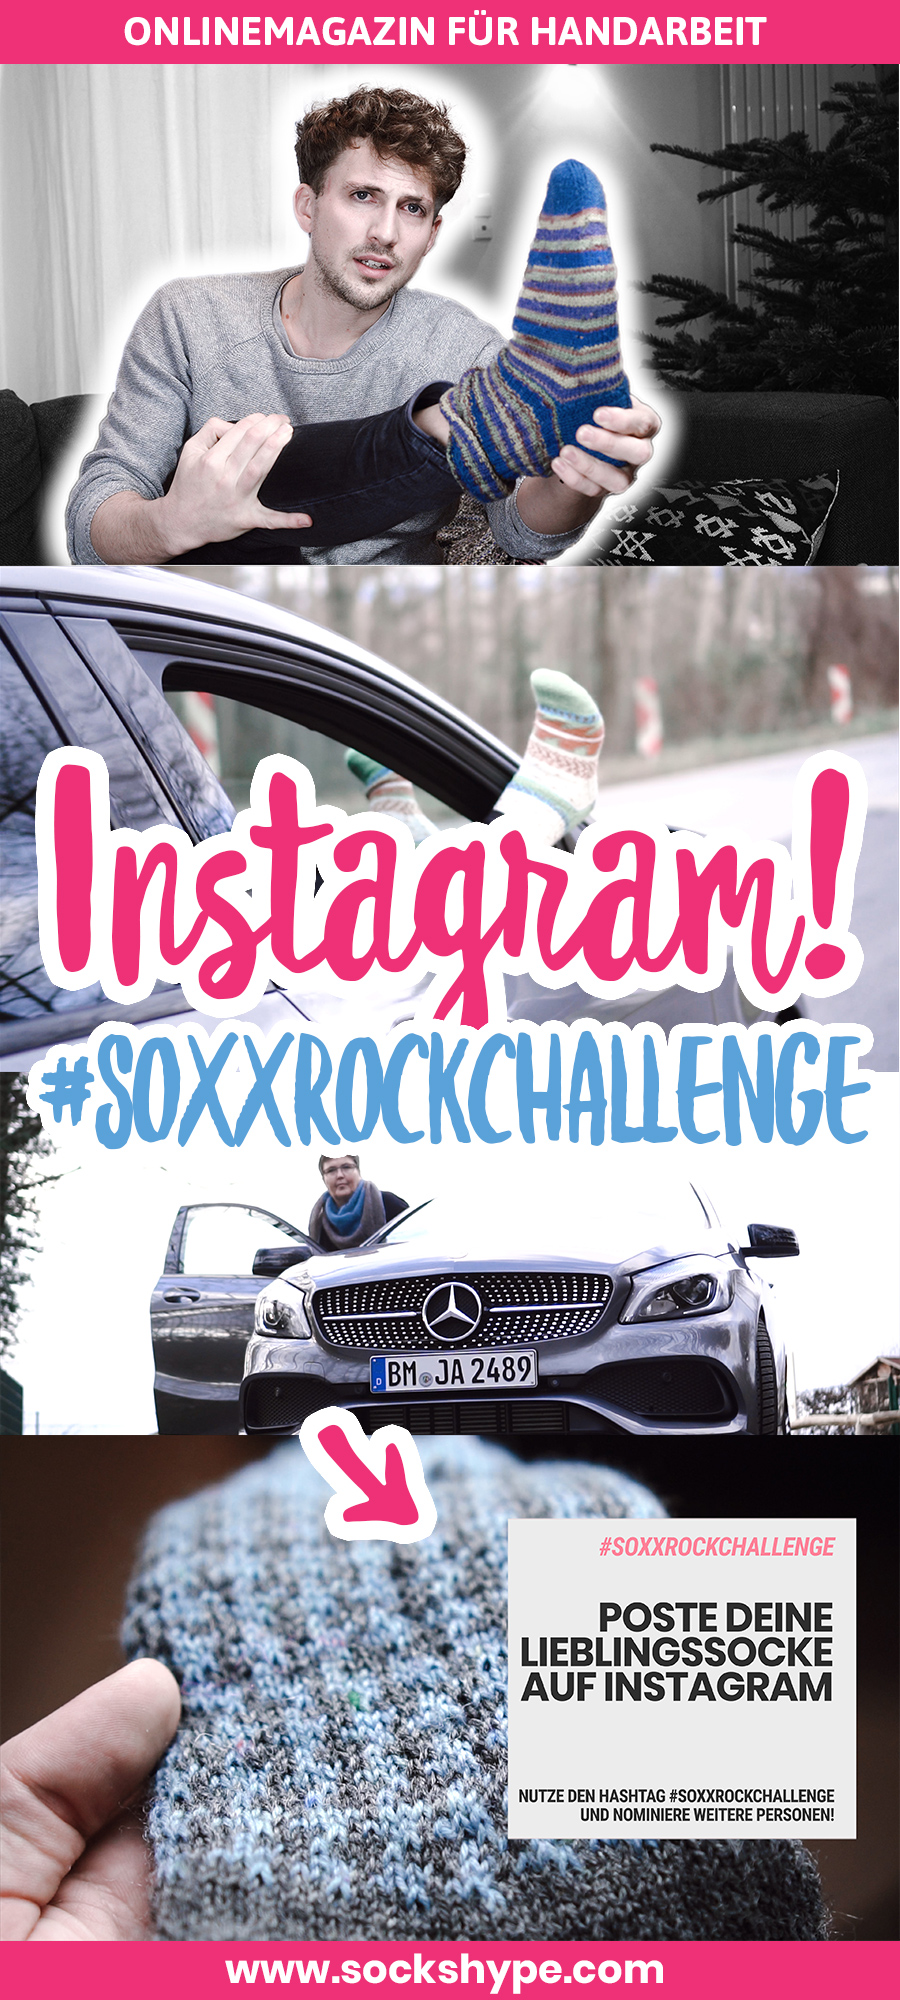 Nominiert für die #soxxrockchallenge auf Instagram